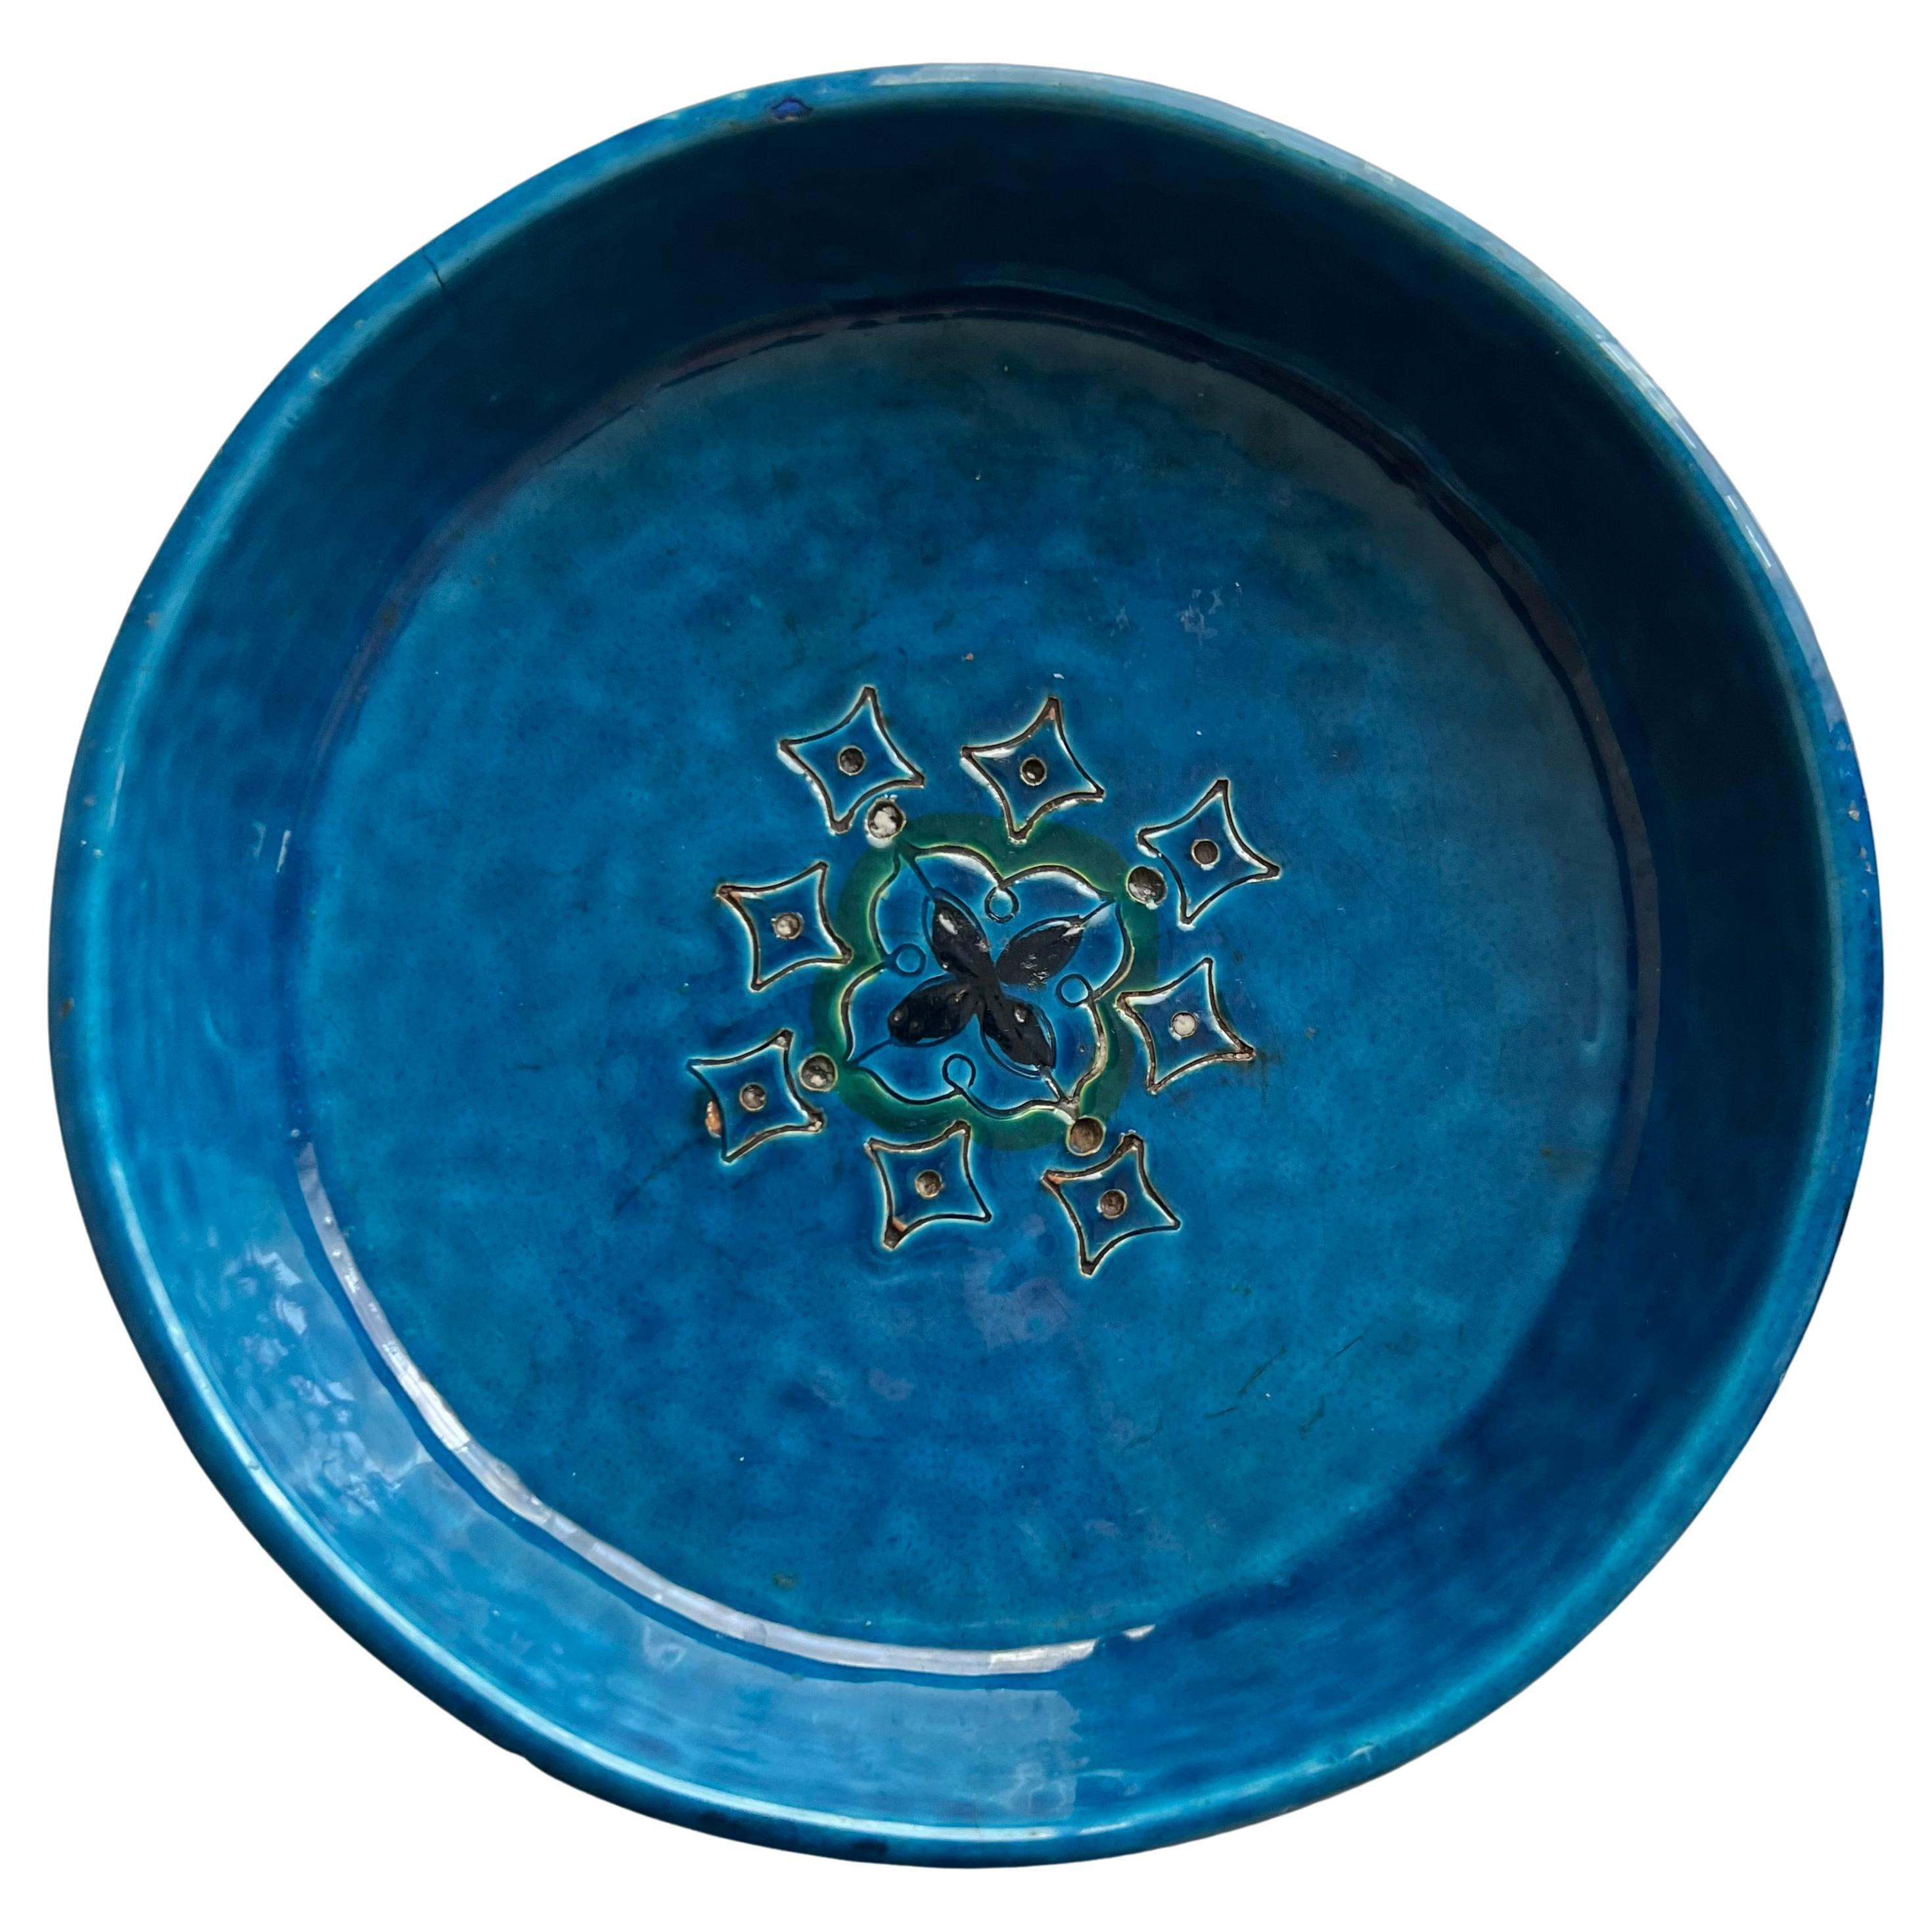 Italienische blau glasierte Keramikschüssel oder -schale. Klassisches mediterranes Keramikdesign mit blauer, grüner und marineblauer Glasur. Umwerfend, wenn sie voller Zitronen sind! Eine Ergänzung für jede Küche und jeden Garten. Das Stück ist mit